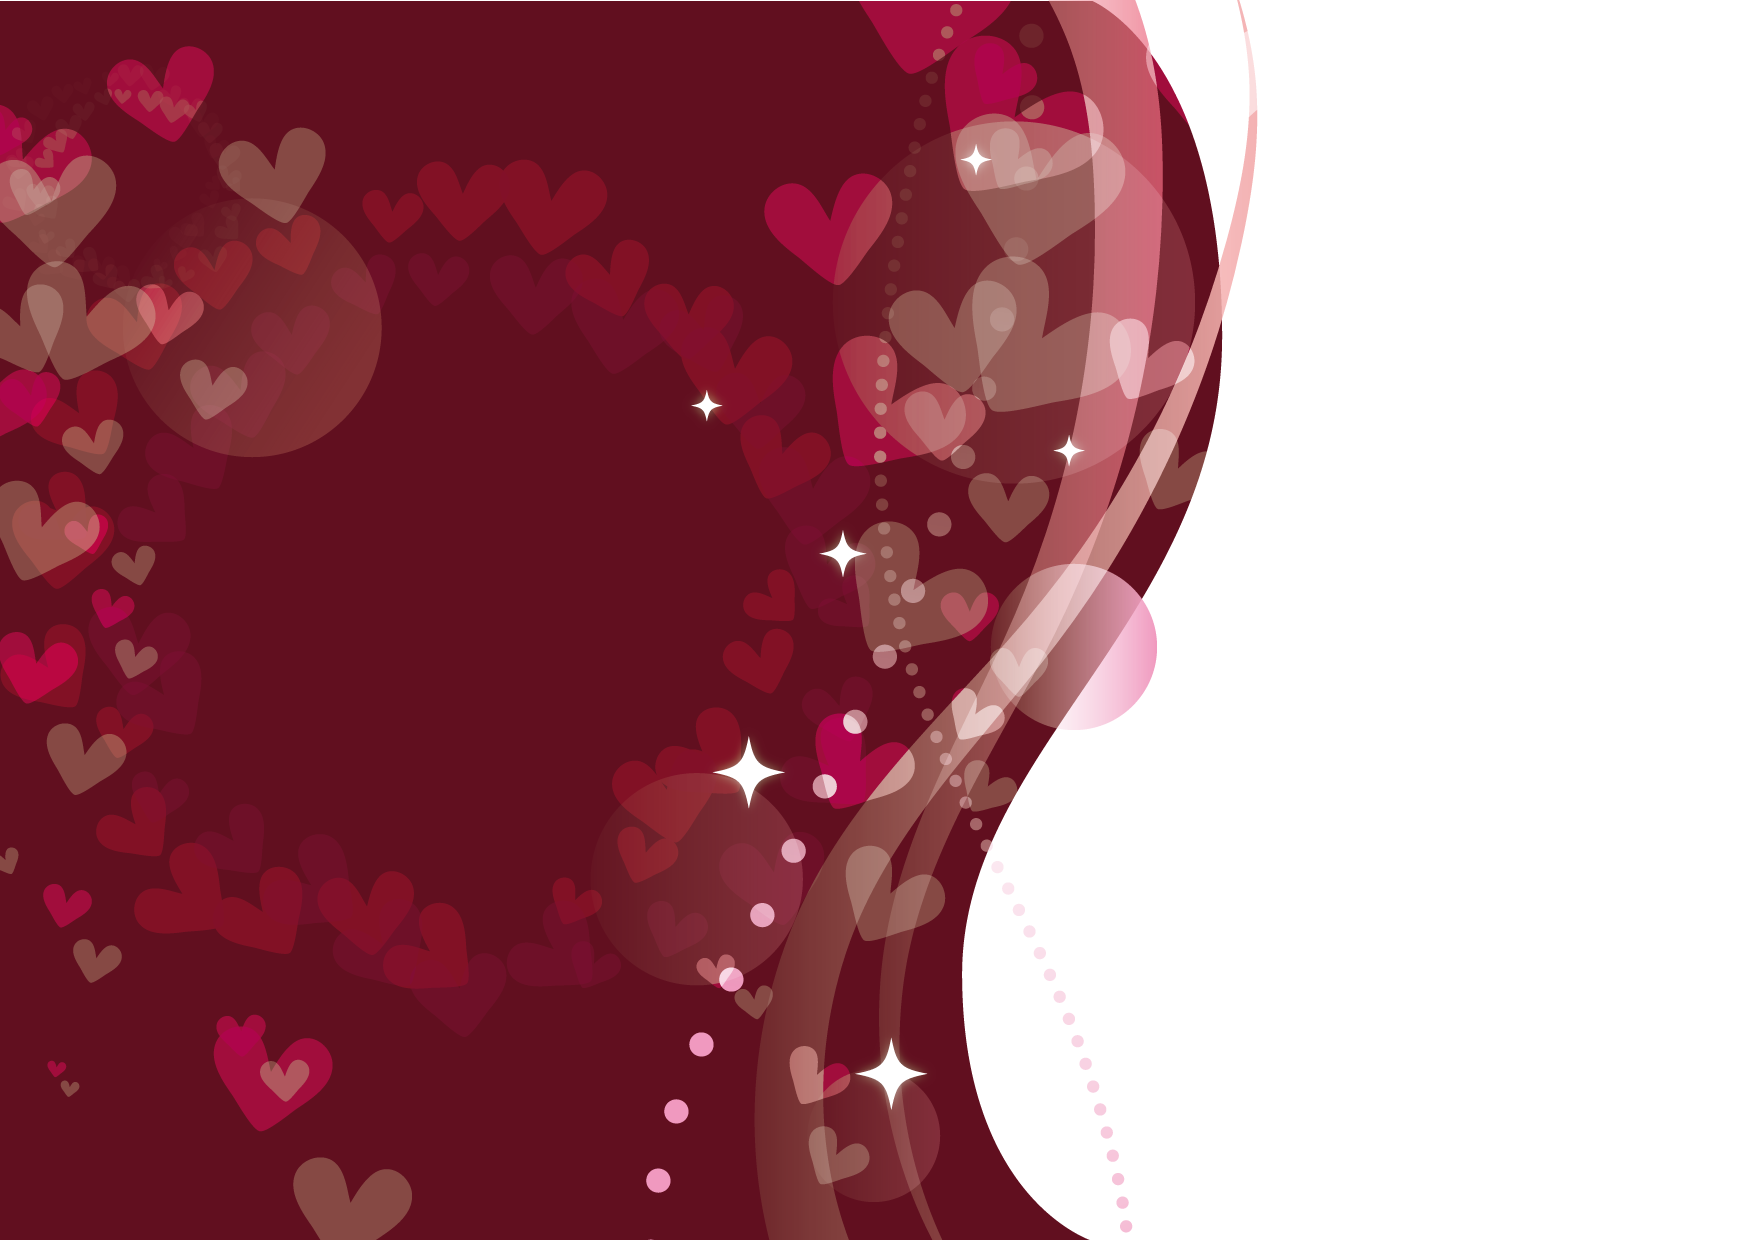 可愛いイラスト無料 バレンタイン ポスター チョコレート色 Free Illustration Valentine Poster Chocolate Color 公式 イラスト素材サイト イラストダウンロード